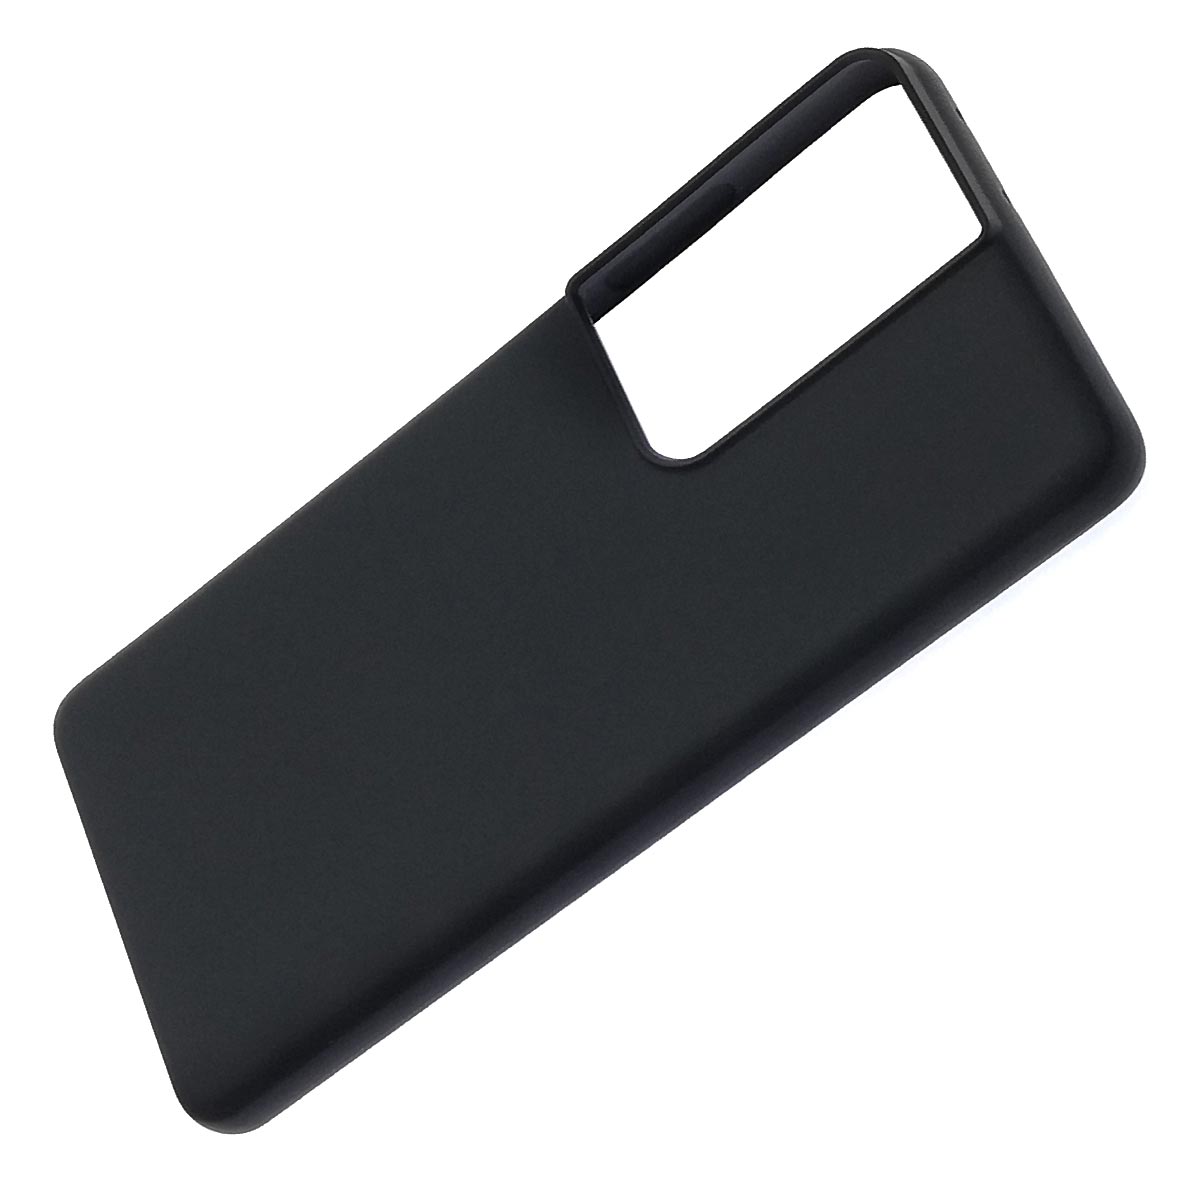 Чехол накладка Kevlar для SAMSUNG Galaxy S21 Ultra (SM-G998), силикон, бархат, цвет черный